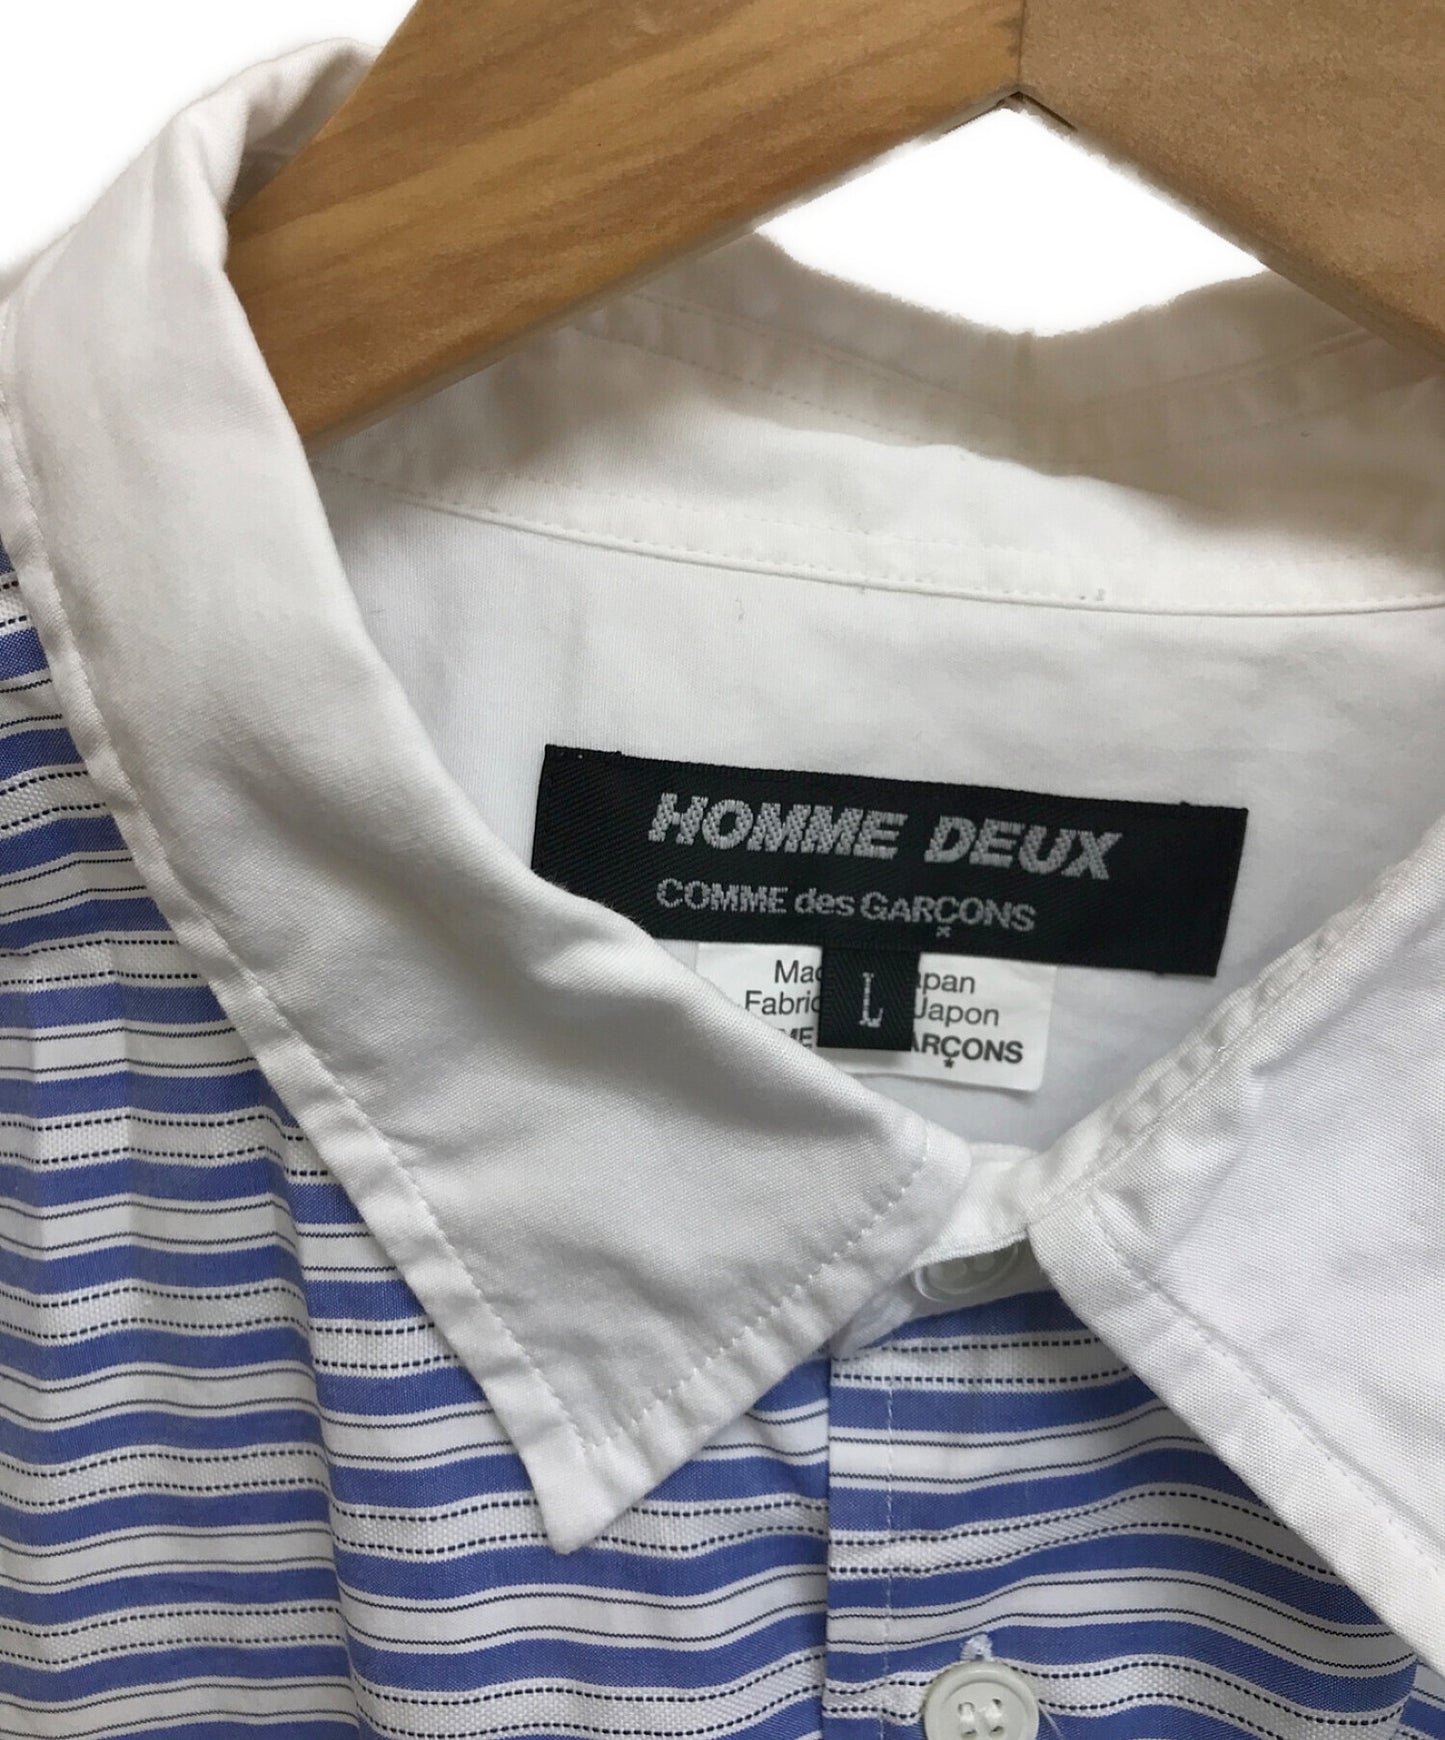 Comme des Garcons Homme Deux 스트라이프 Topstripe 셔츠 do-b053